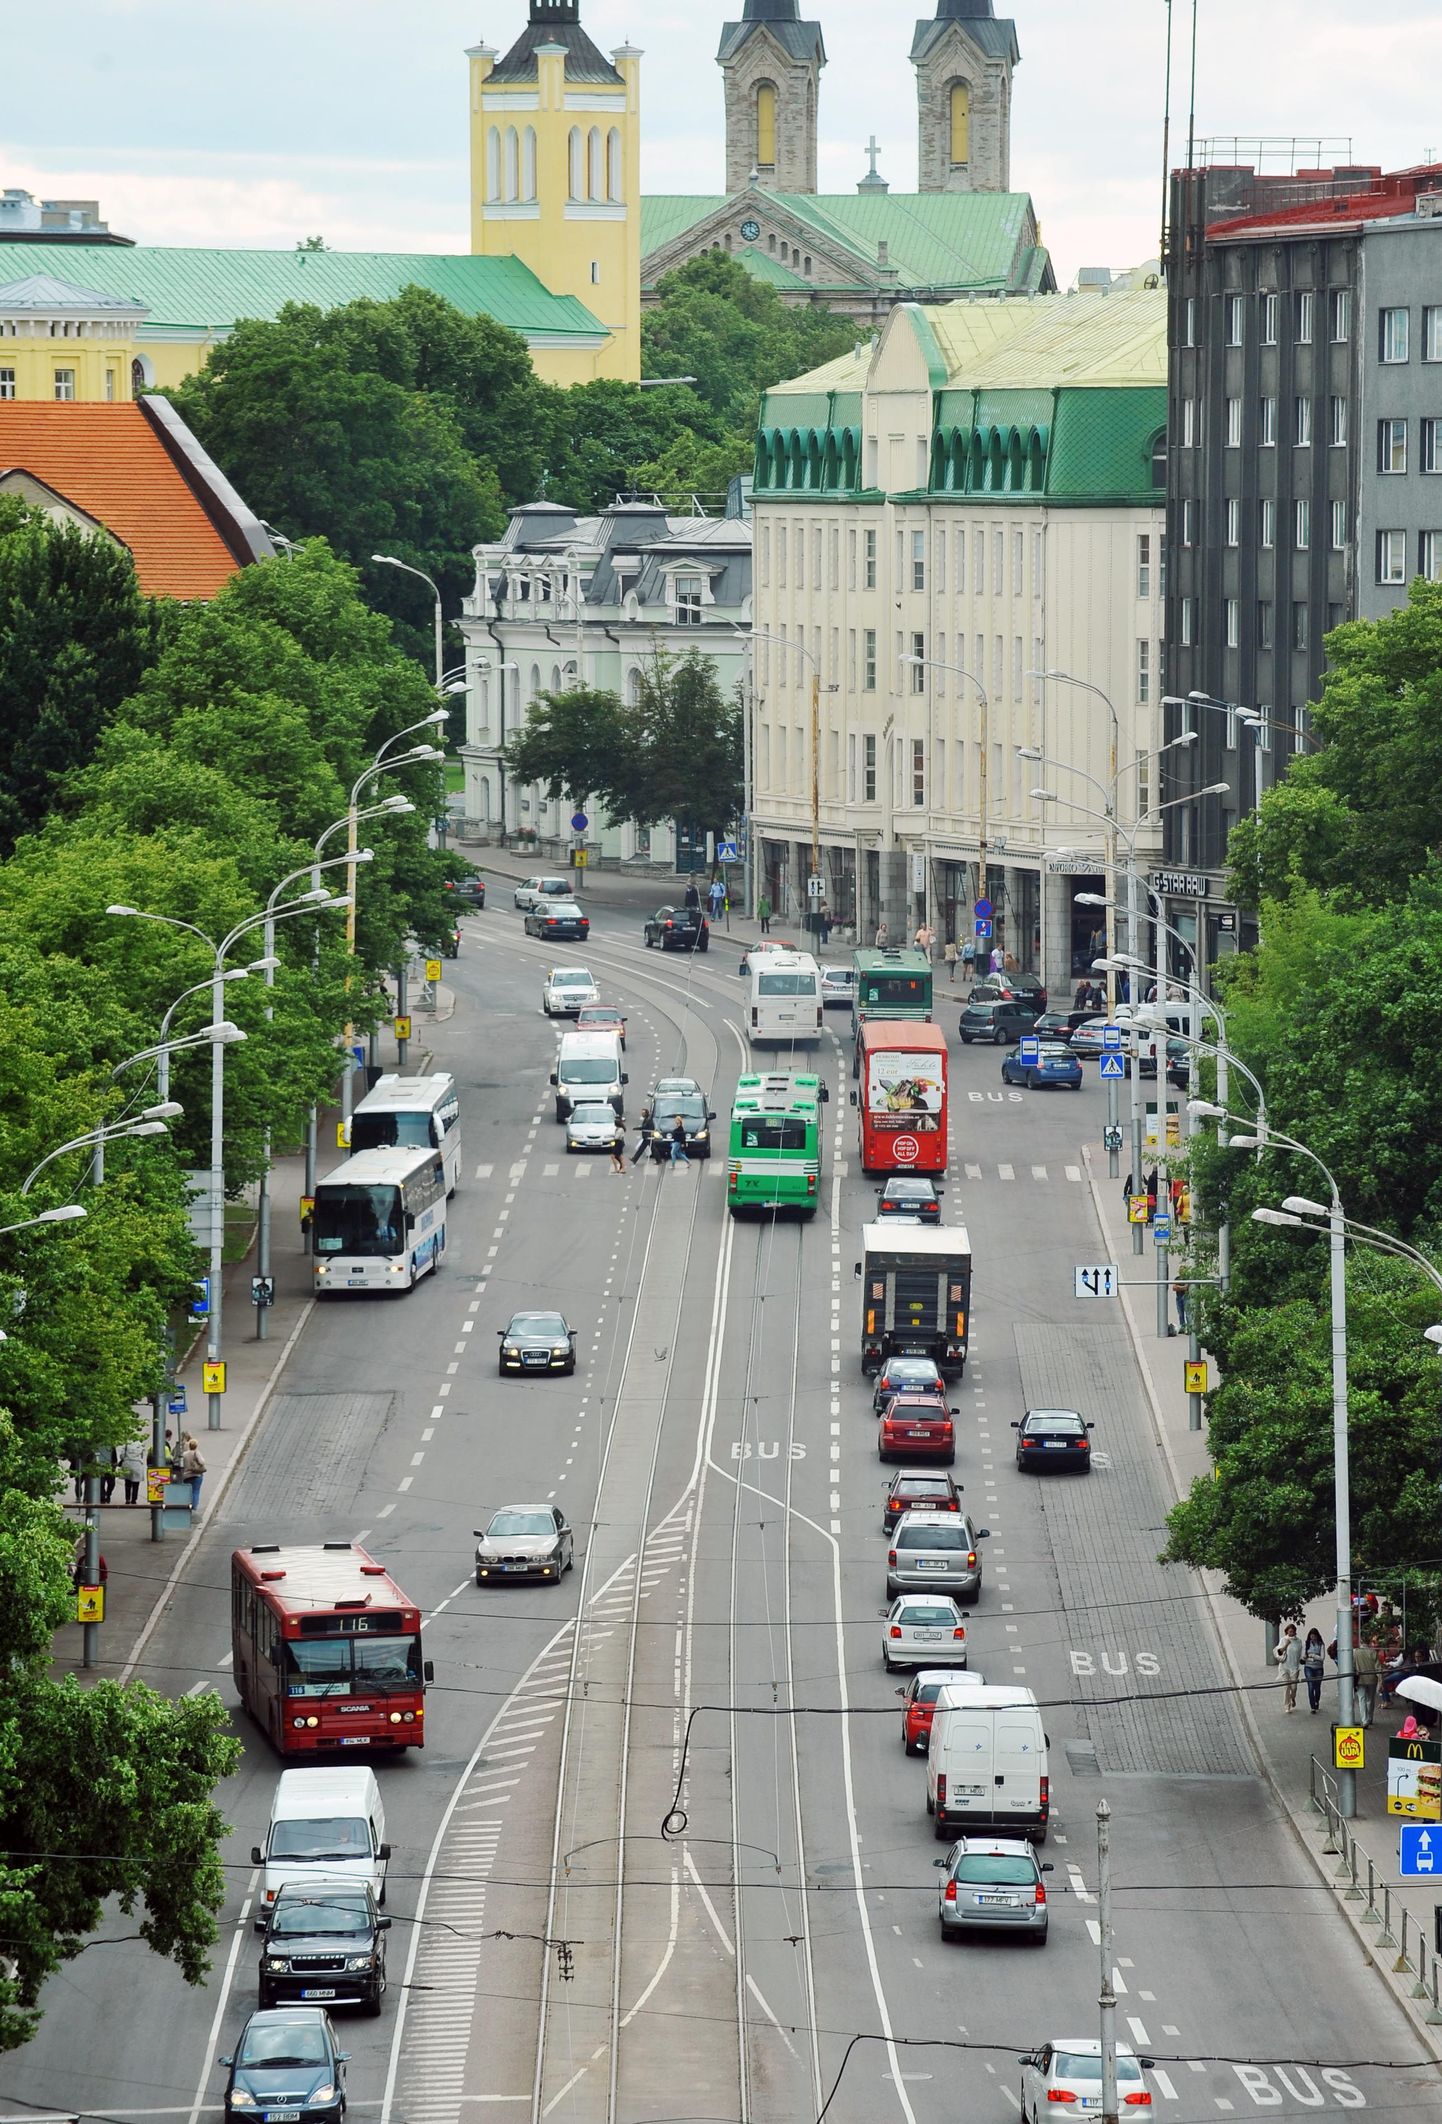 Одно из самых сложных мест на дорогах Таллинна - Пярнуское шоссе после круга Виру